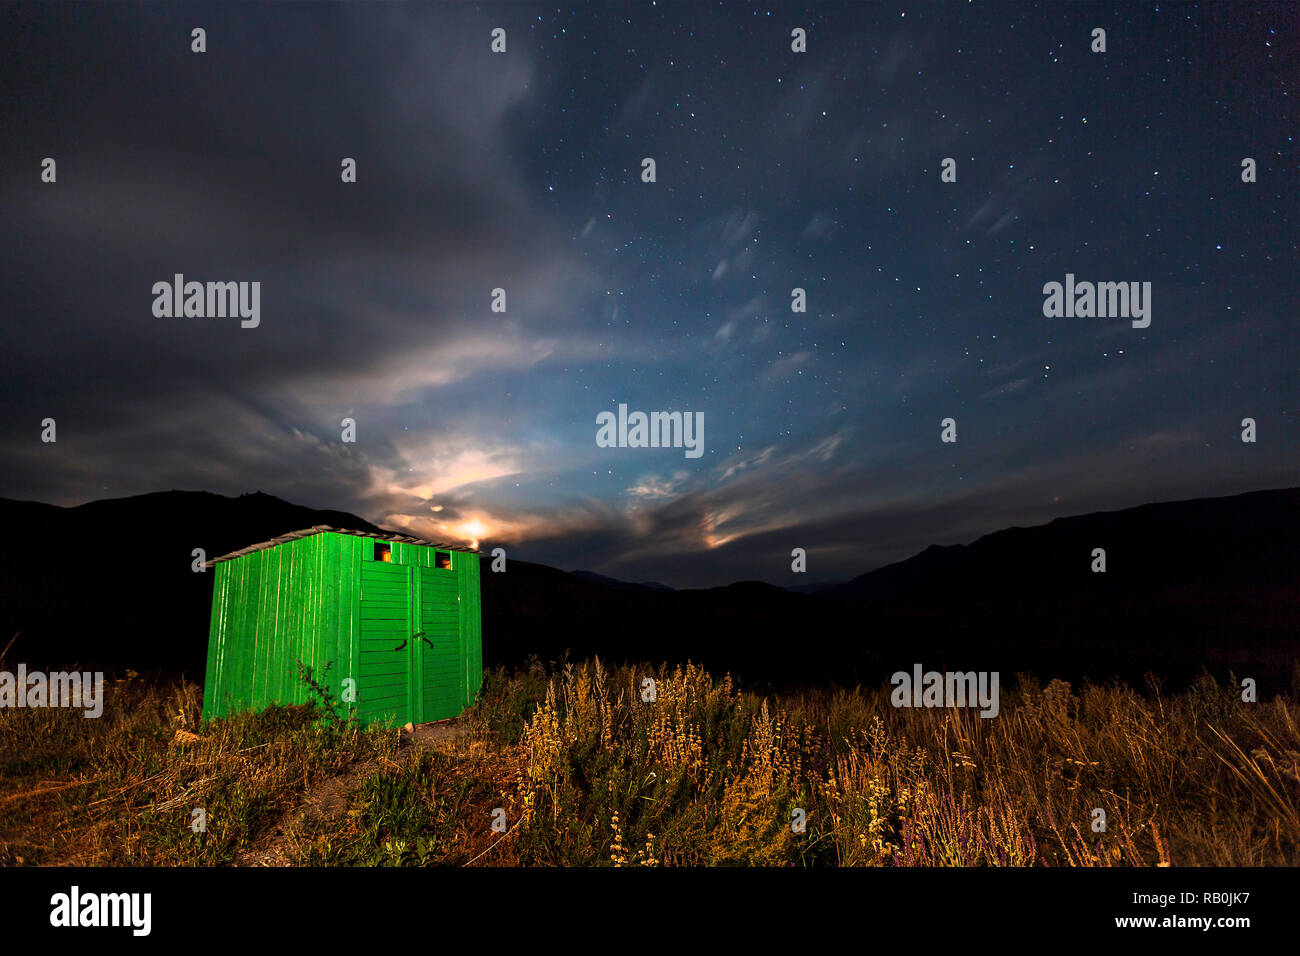 Cabaña de madera verde con la luna y las estrellas en el cielo, en la zona de Los Lagos Kolsai, Kazajstán. Foto de stock